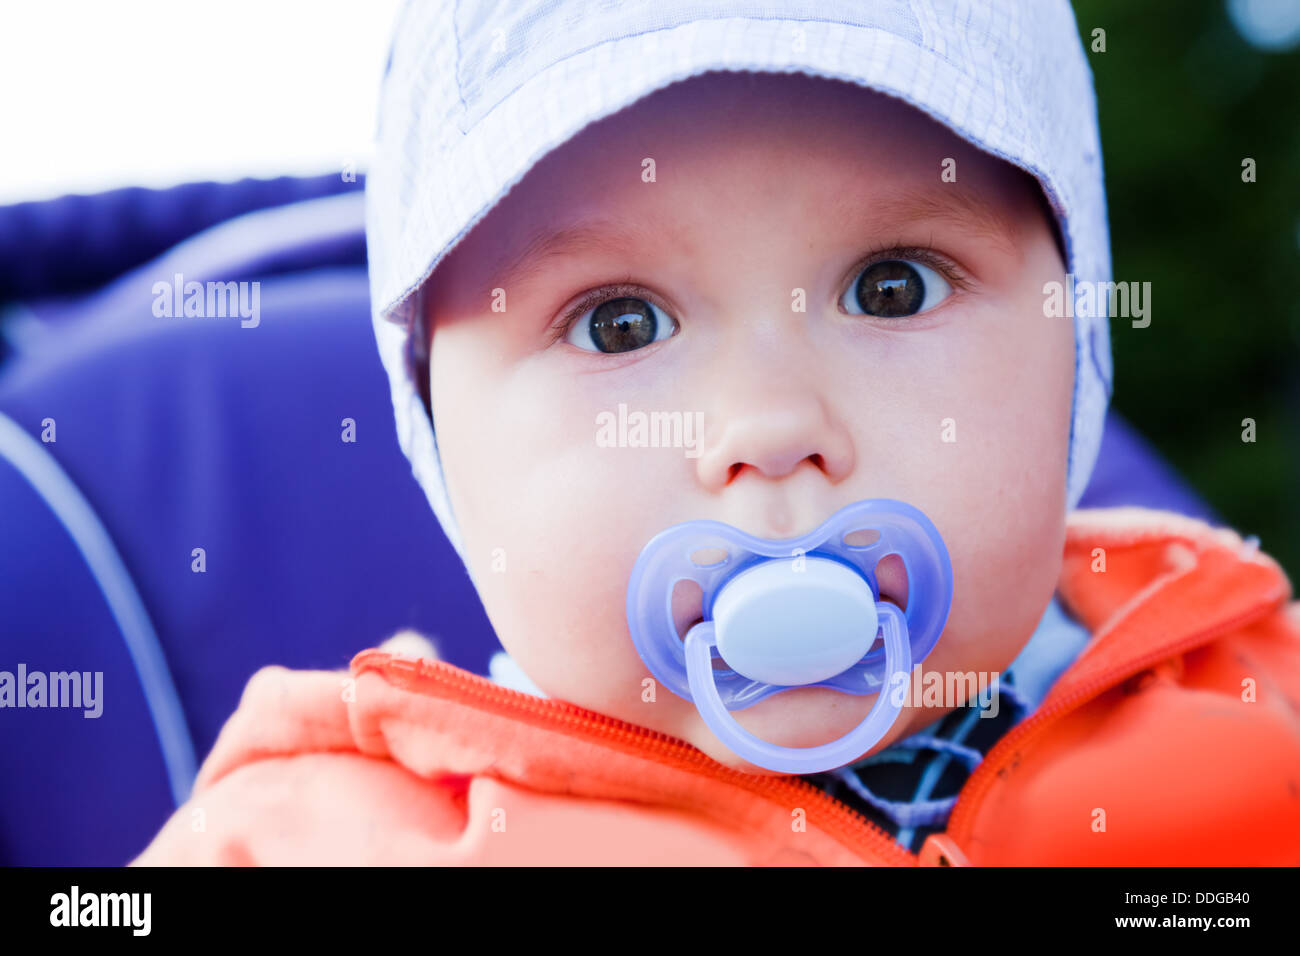 Junge baby Boy mit einem Dummy im Mund außerhalb in seinem Kinderwagen Stockfoto